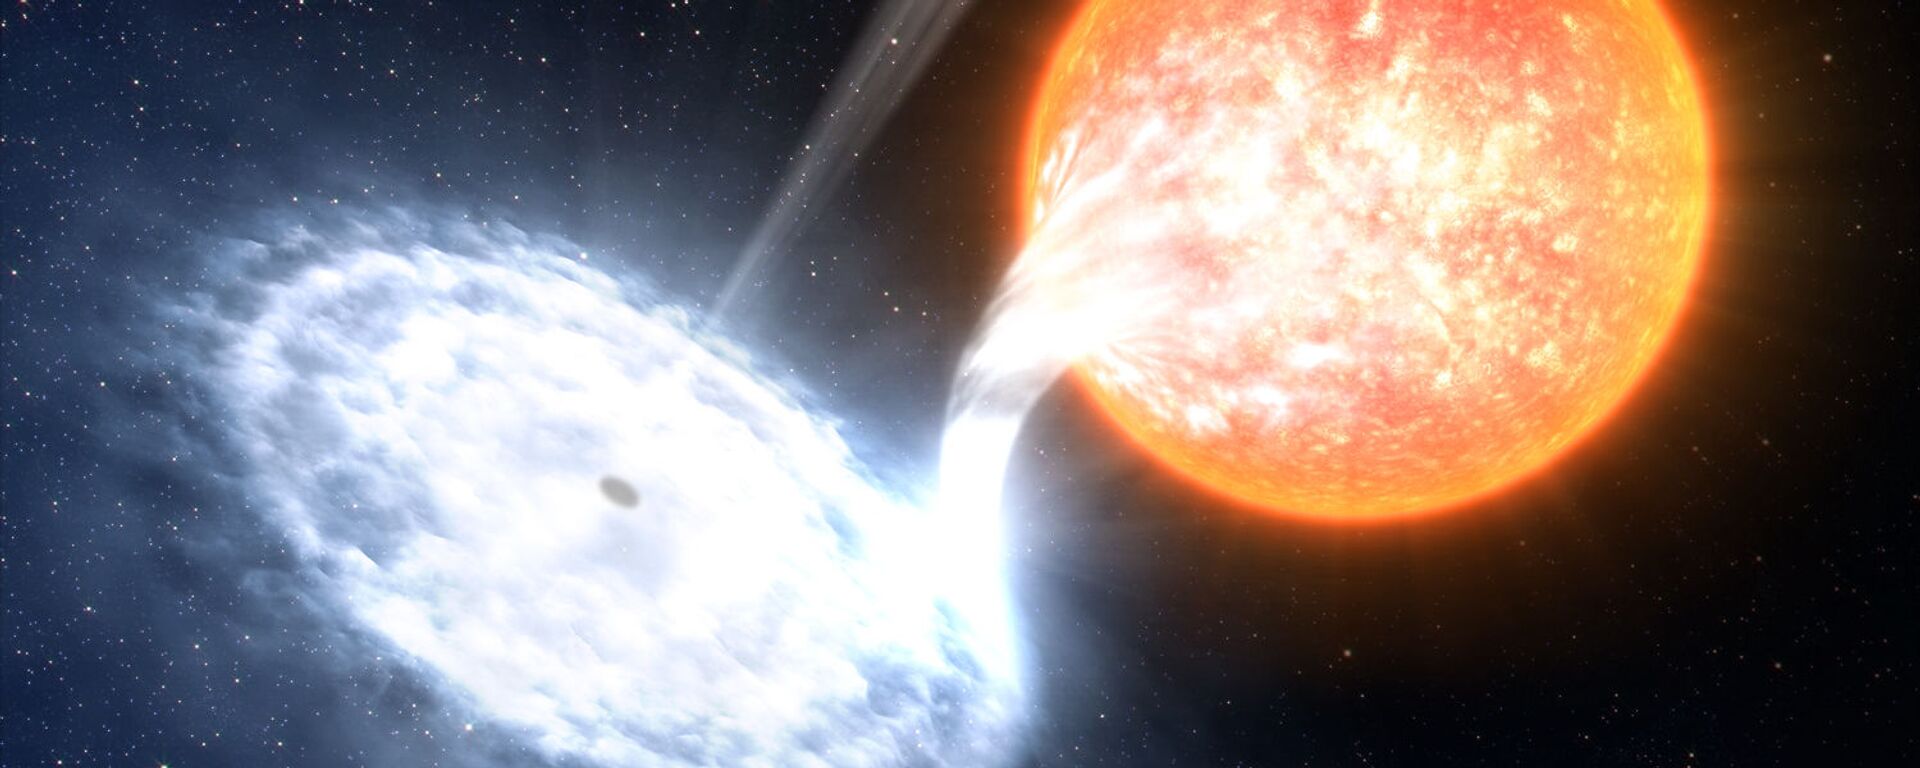 المجرة GX 339-4 - إحدى الثنائيات الأكثر ديناميكية في الفضاء، مع أربعة انفجارات خلال  الأعوام السبعة الماضية. في المجموعة الشمسية، نجم متطور لا يكبر الشمس كثيراً، يدور حول ثقب أسود يقدر حجمه بـ 10 أضعاف من الكتل الشمسية.  - سبوتنيك عربي, 1920, 14.10.2022